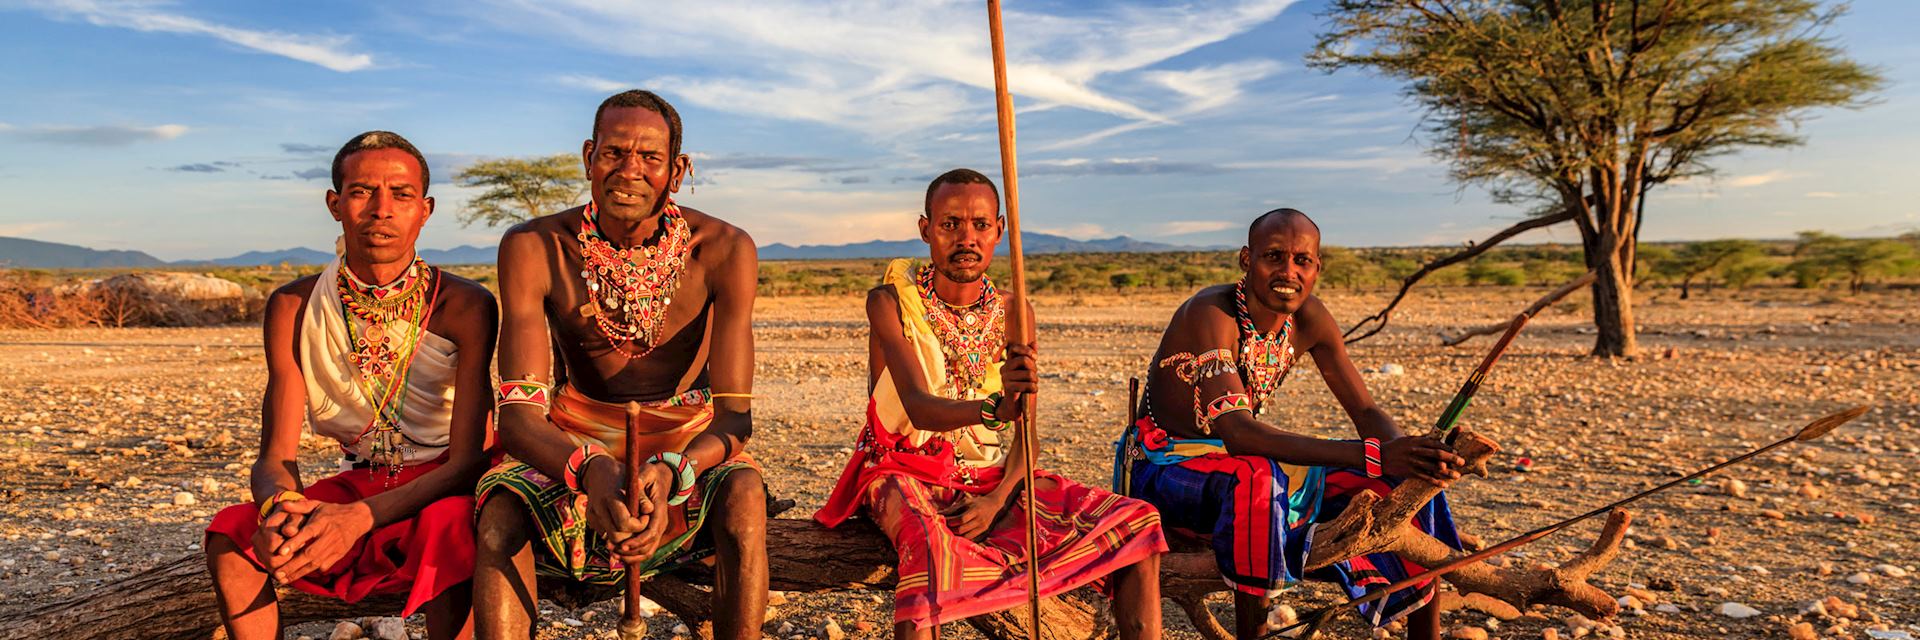 Samburu tribe, Samburu National Reserve